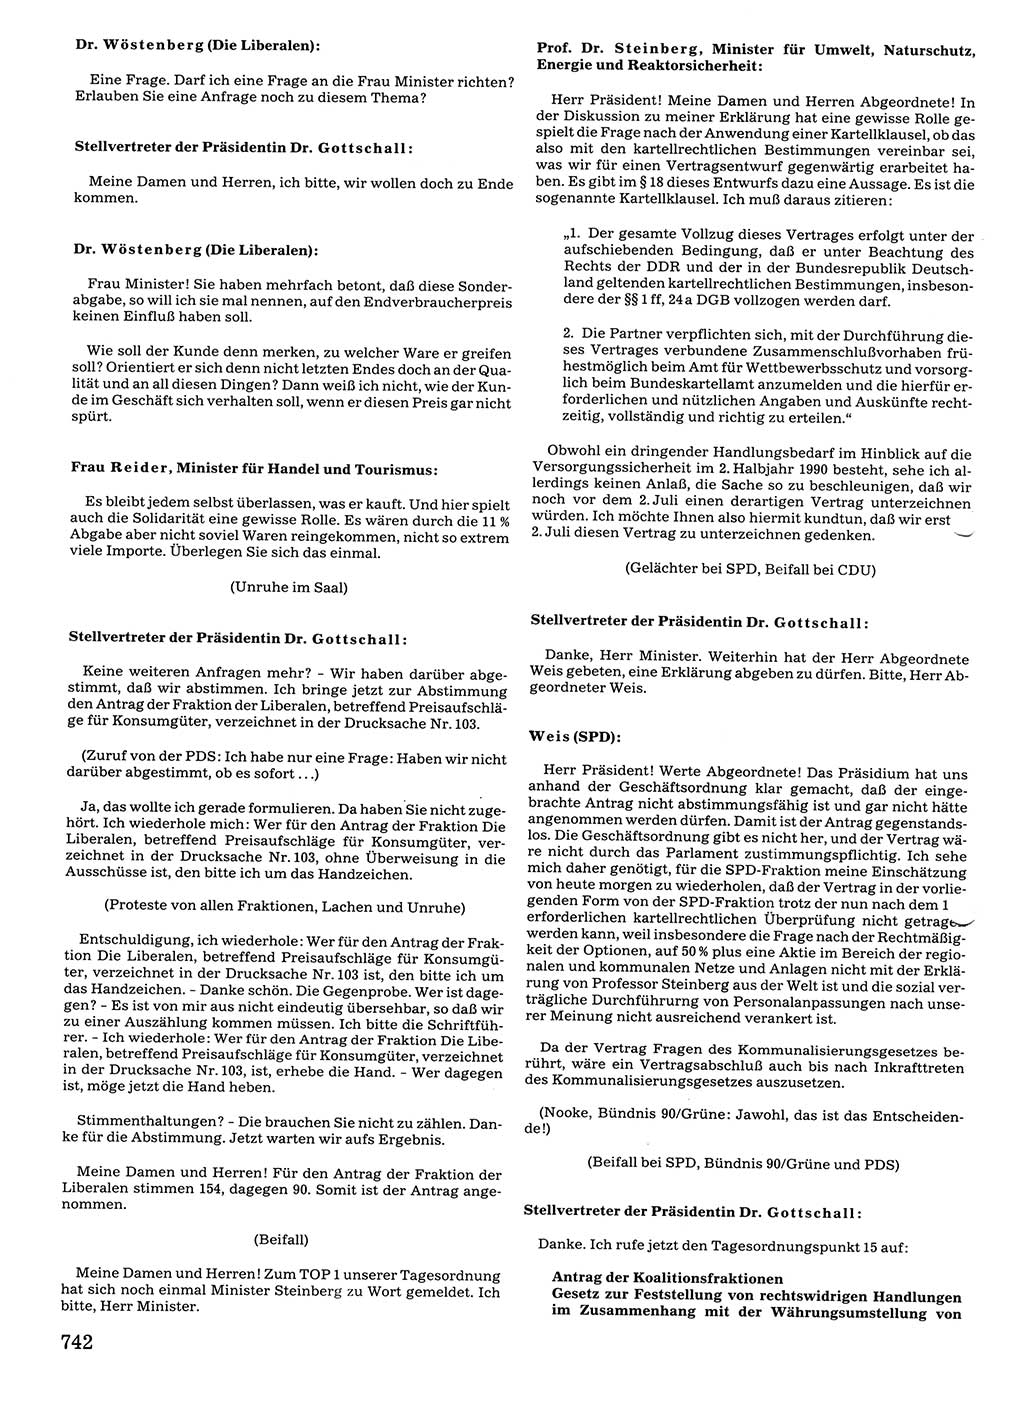 Tagungen der Volkskammer (VK) der Deutschen Demokratischen Republik (DDR), 10. Wahlperiode 1990, Seite 742 (VK. DDR 10. WP. 1990, Prot. Tg. 1-38, 5.4.-2.10.1990, S. 742)